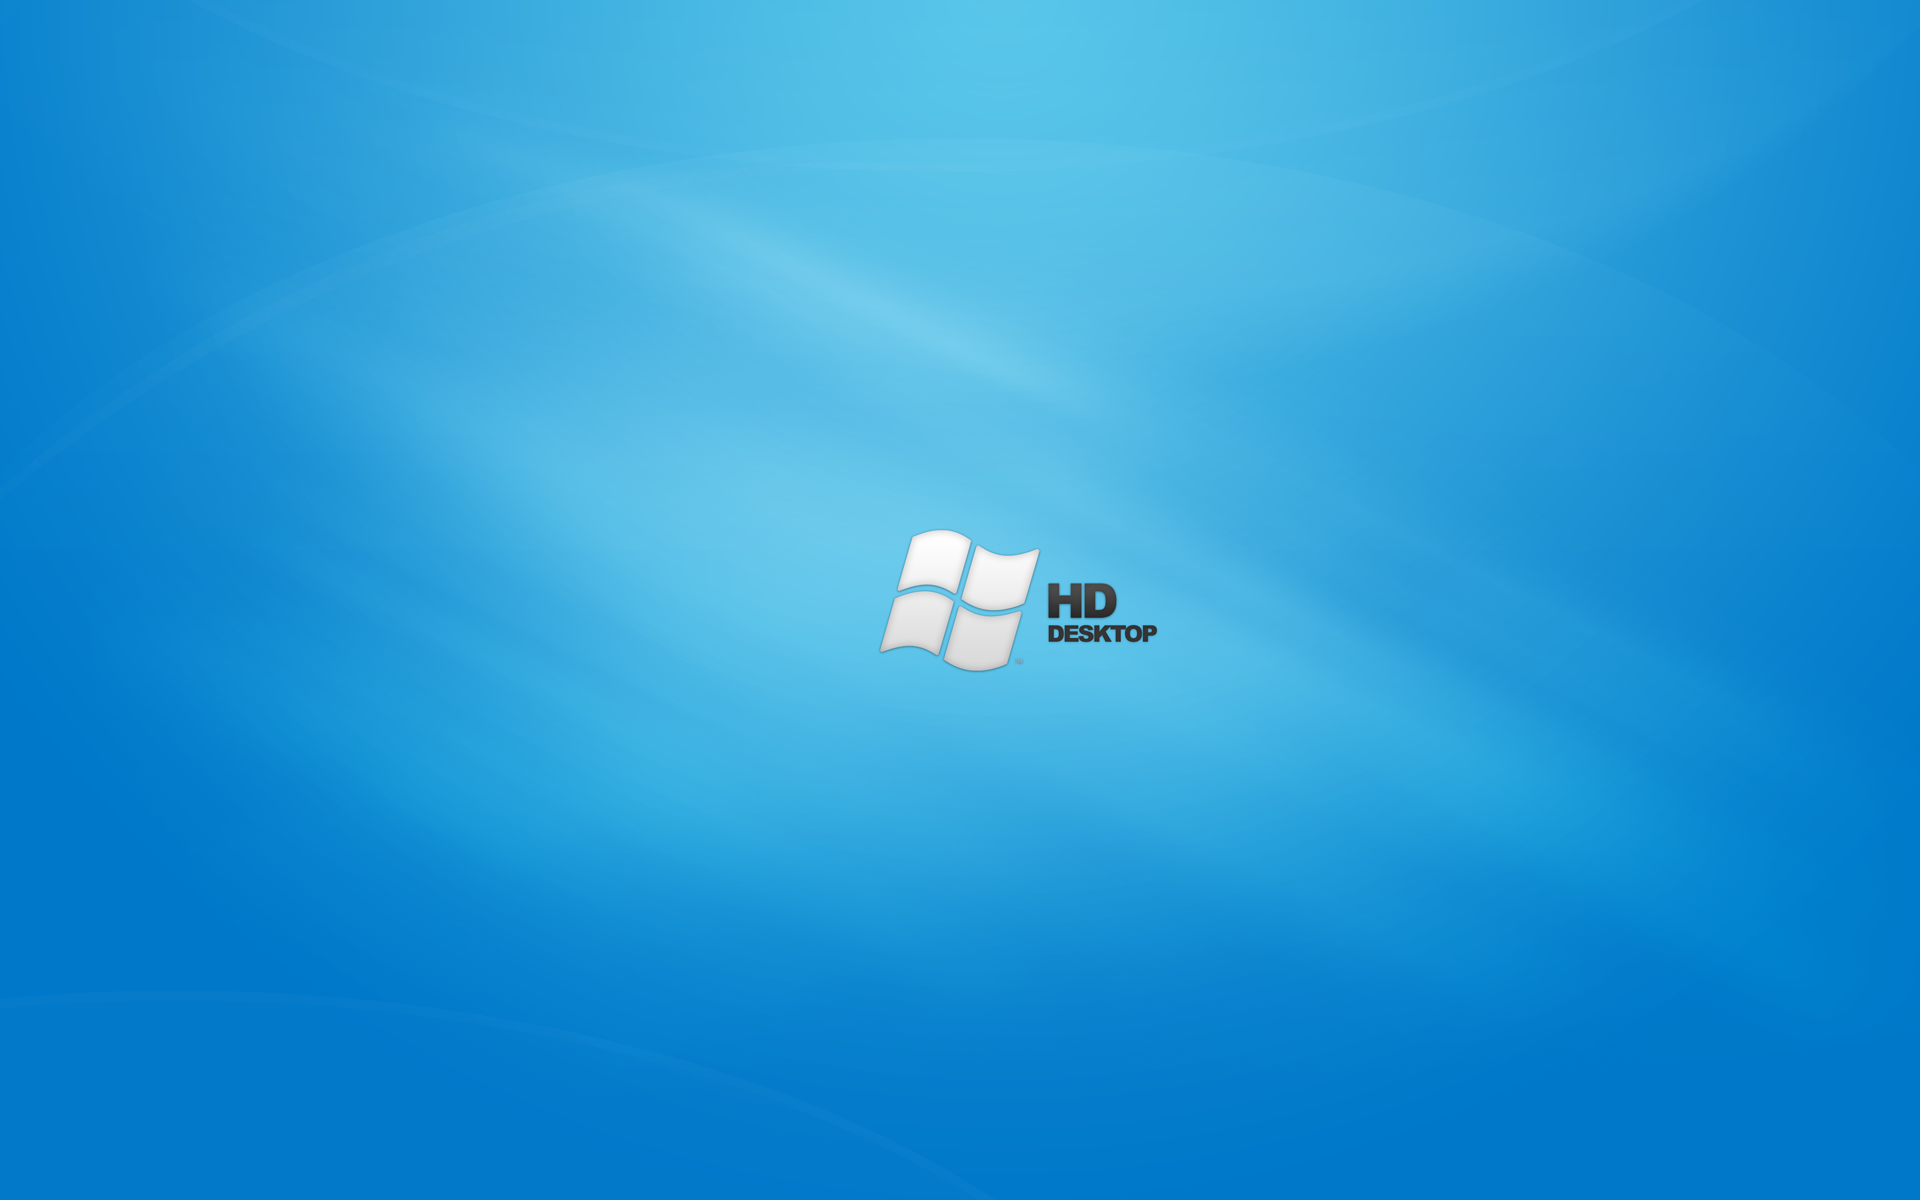 desktop wallpaper windows 7 starter   wwwwallpapers in hdcom